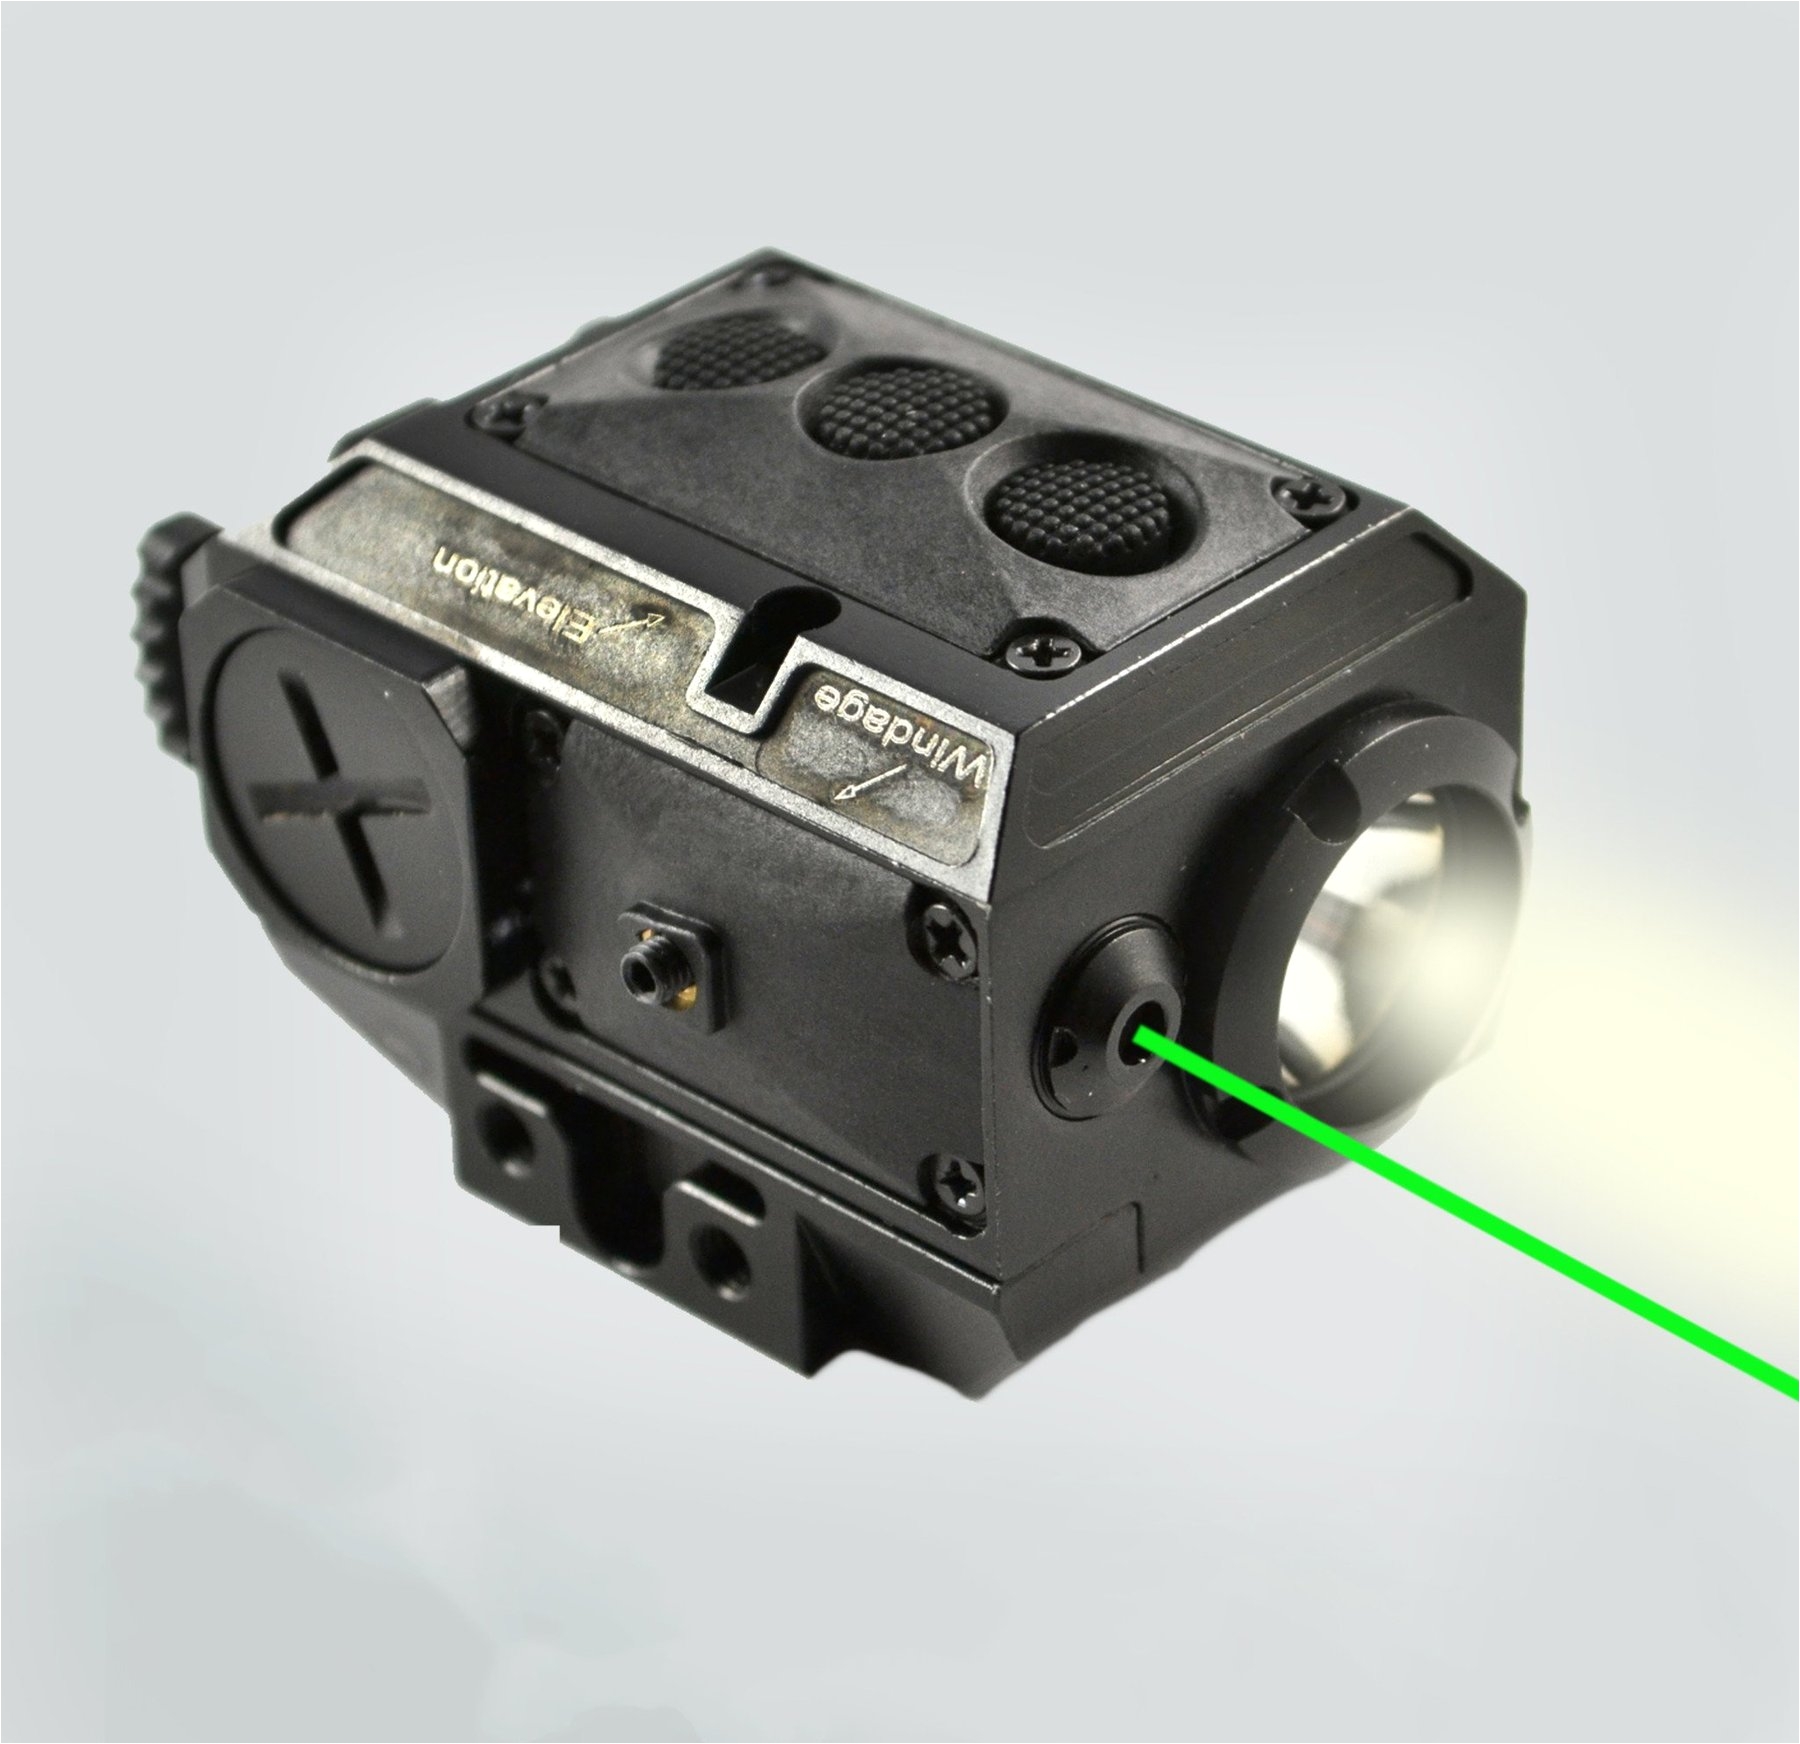 at3a¢ green laser light combo with led strobe flashlight ll 02g